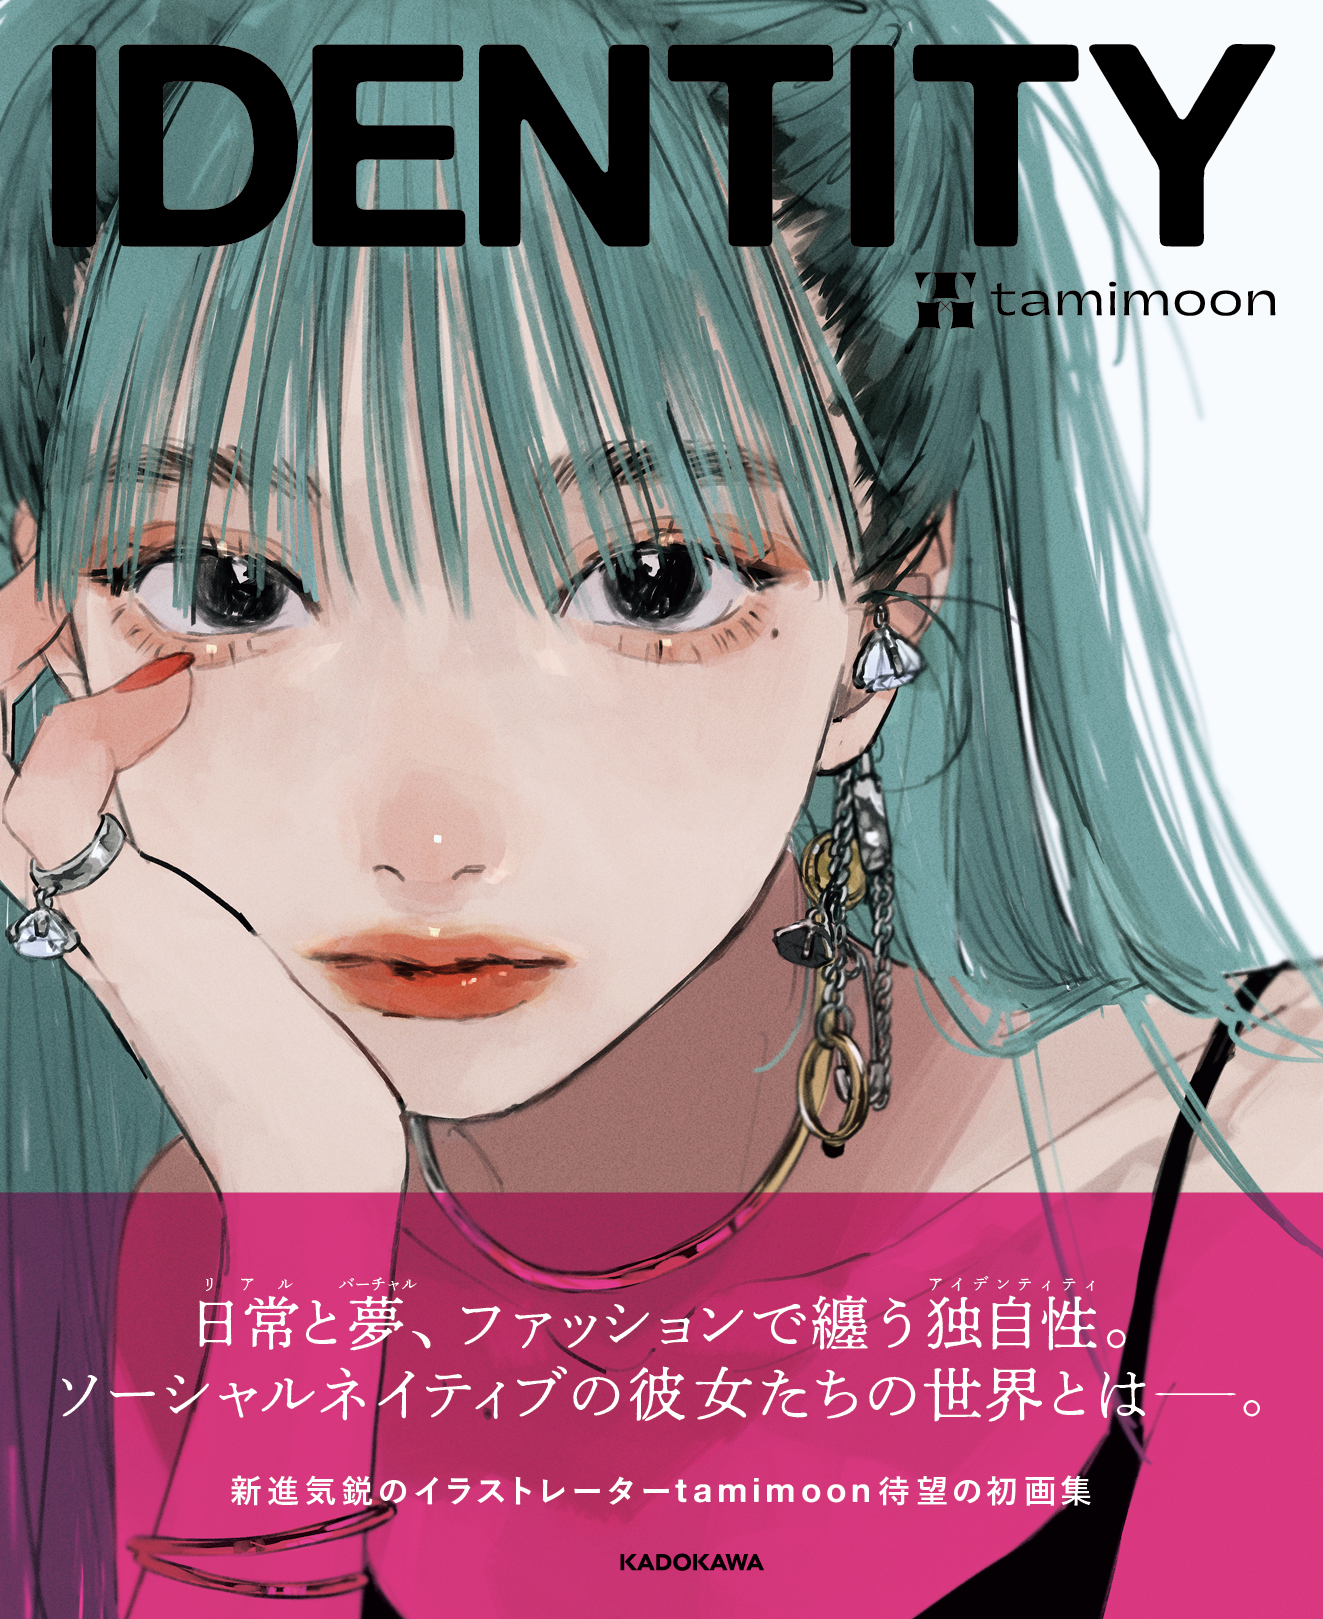 ファッション誌 のような画集 新進気鋭のイラストレーター Tamimoon初の作品集 Identity が2月12日発売 株式会社kadokawaのプレスリリース